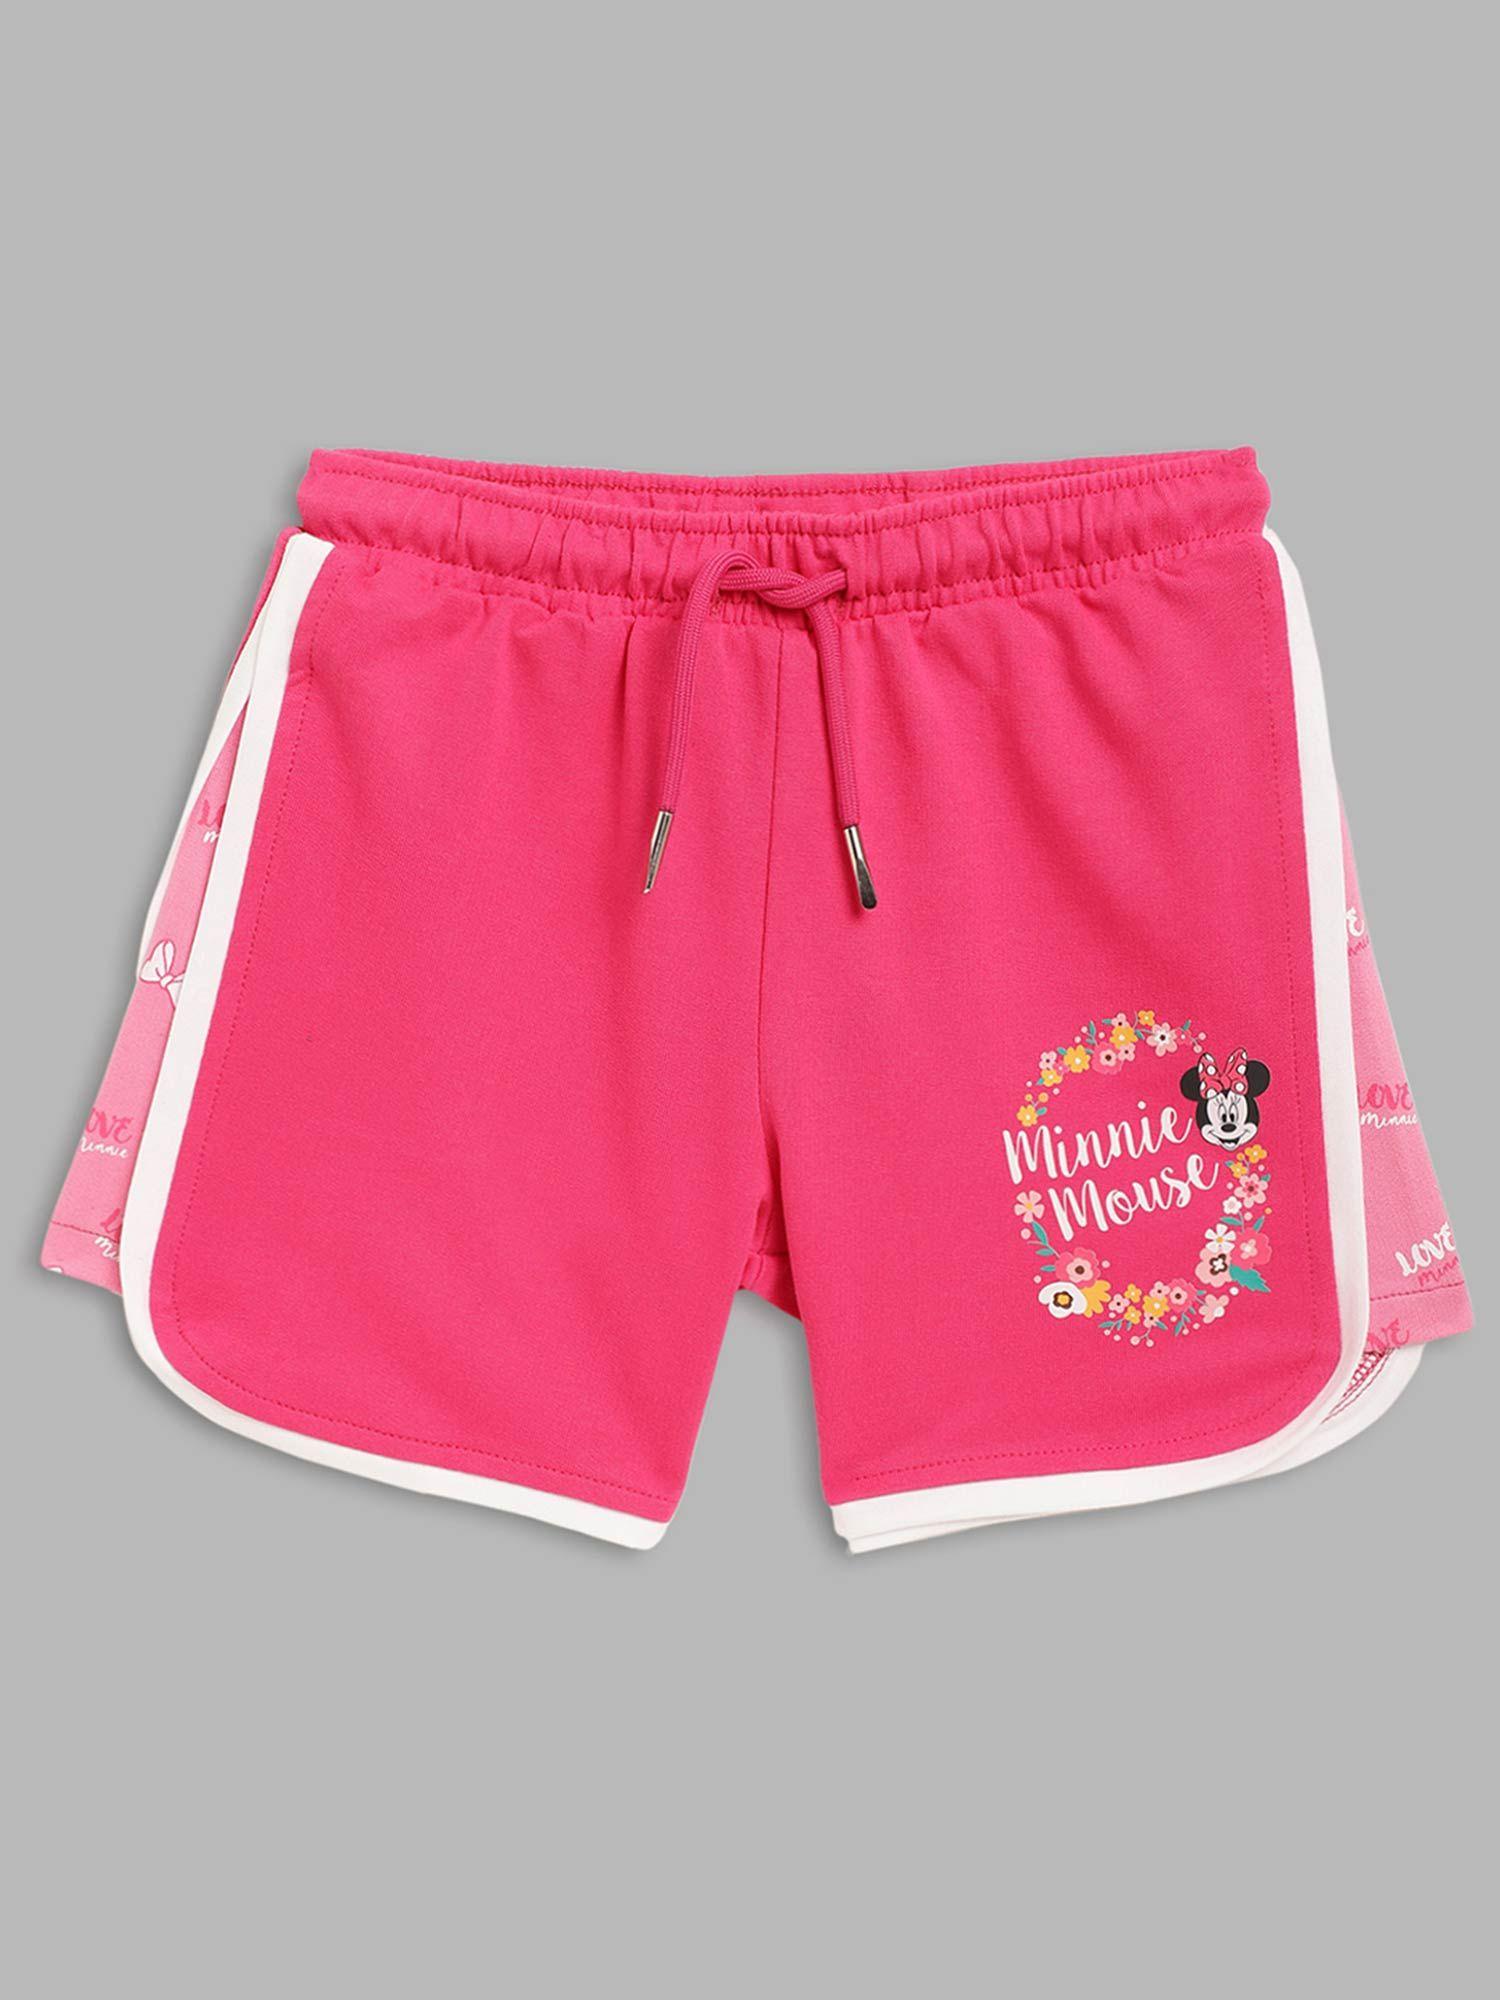 girls pink printed shorts